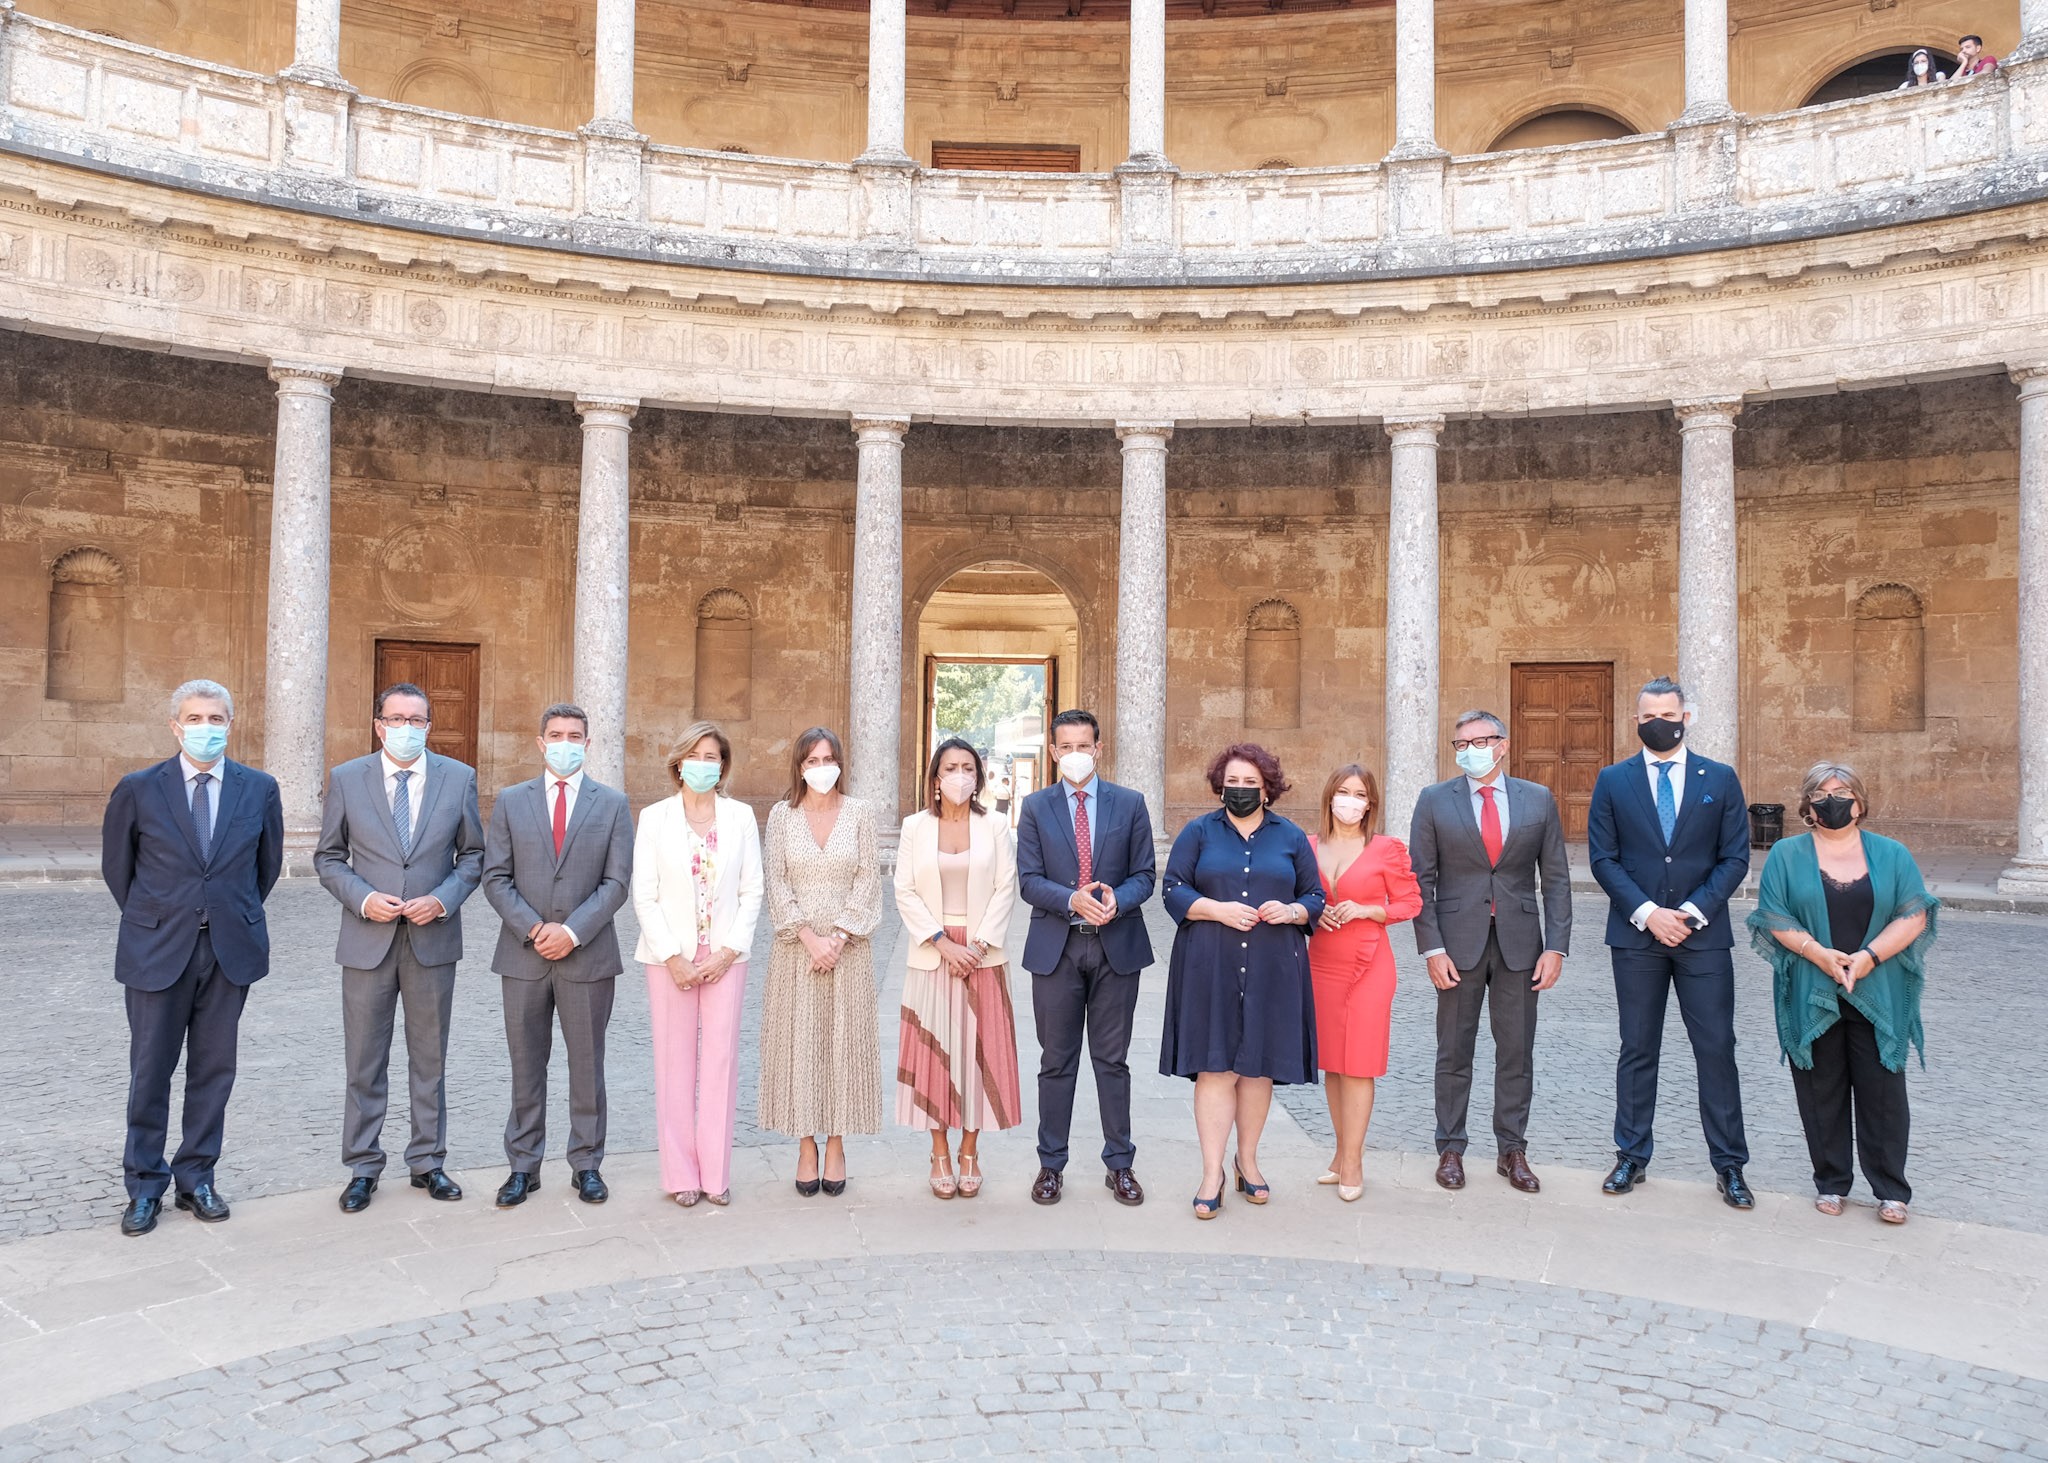   Los miembros de la Mesa, junto al alcalde de Granada, la directora del Patronato de la Alhambra y el Generalife y la primera teniente de alcalde, en el Palacio de Carlos V